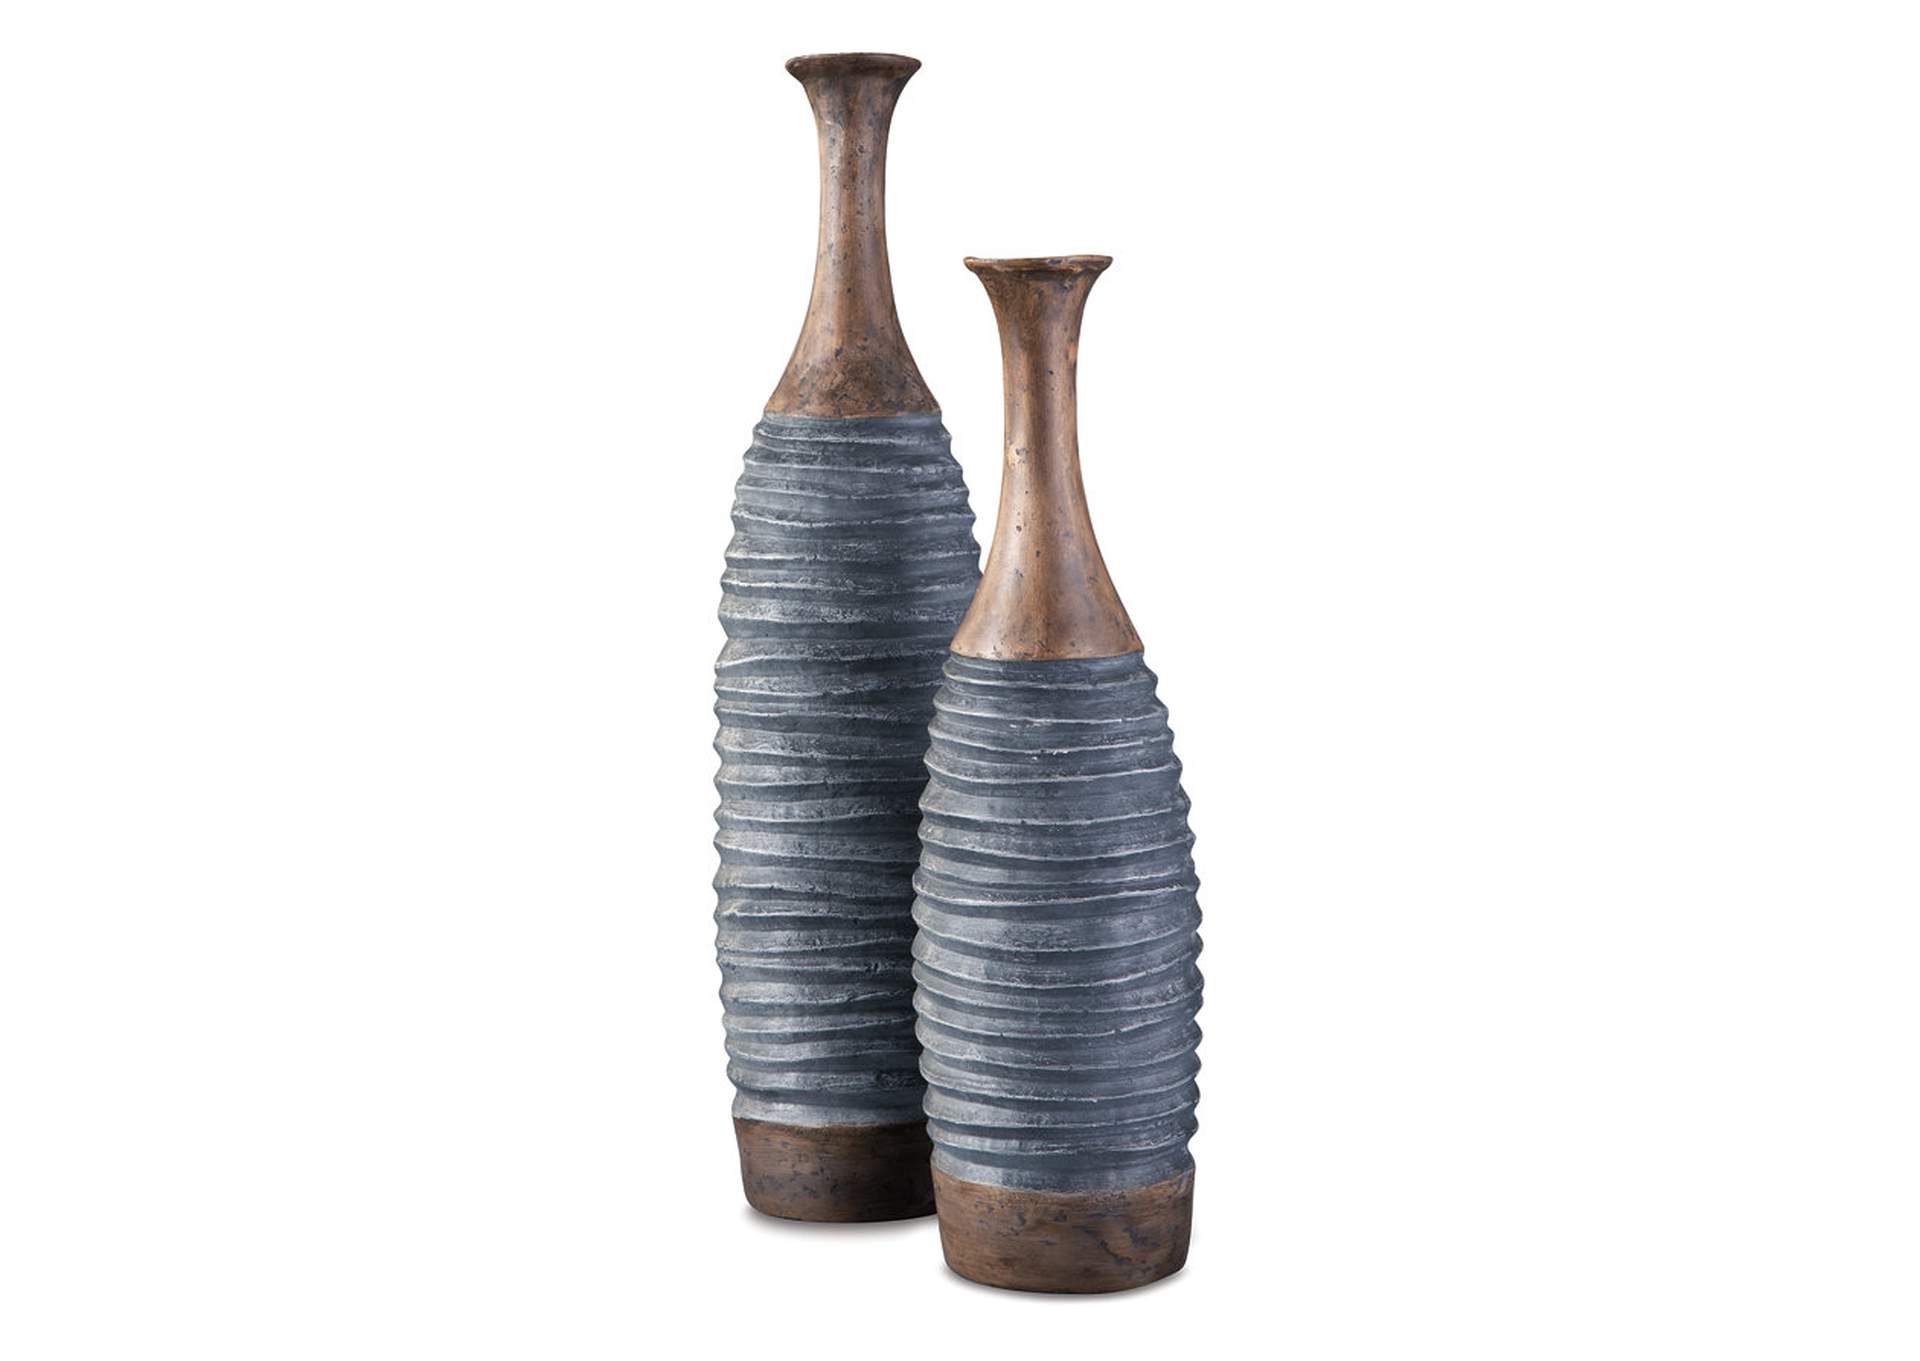 Blayze Vase (Set of 2),Signature Design By Ashley